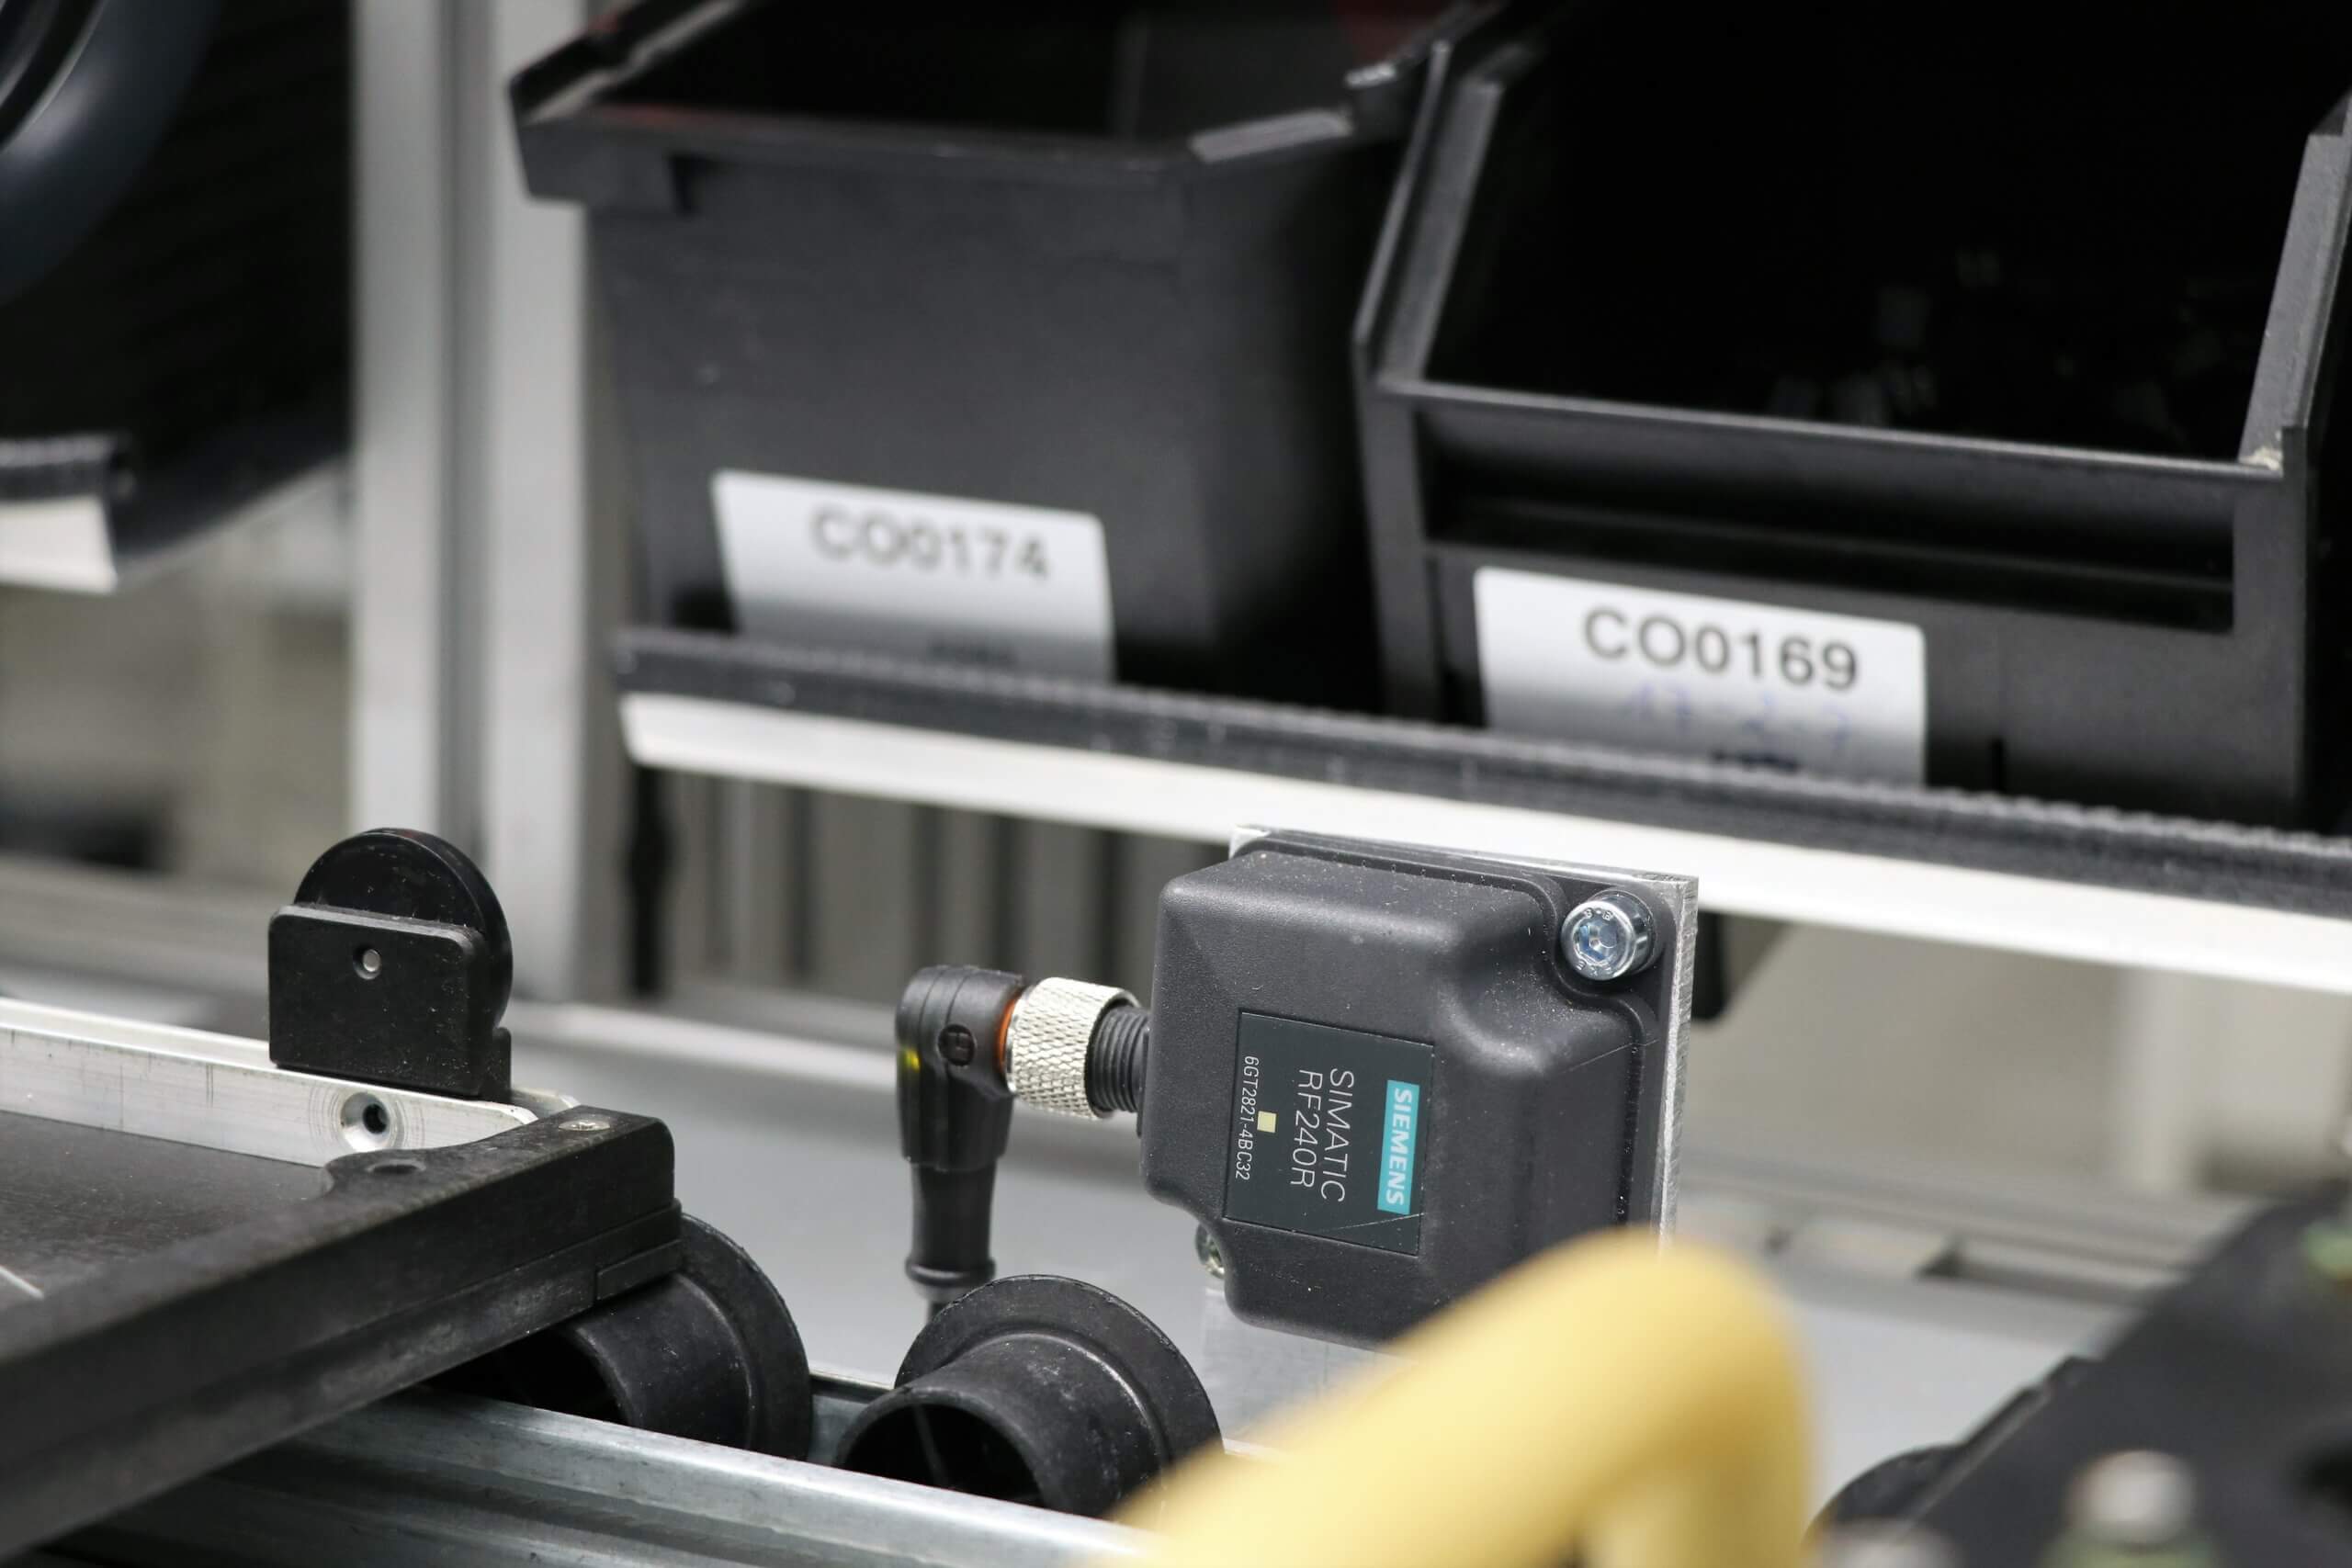 Die Bilder zeigen ein Siemens RFID-Lesegerät und sein Gegenstück, das auf dem Lötrahmen montiert ist